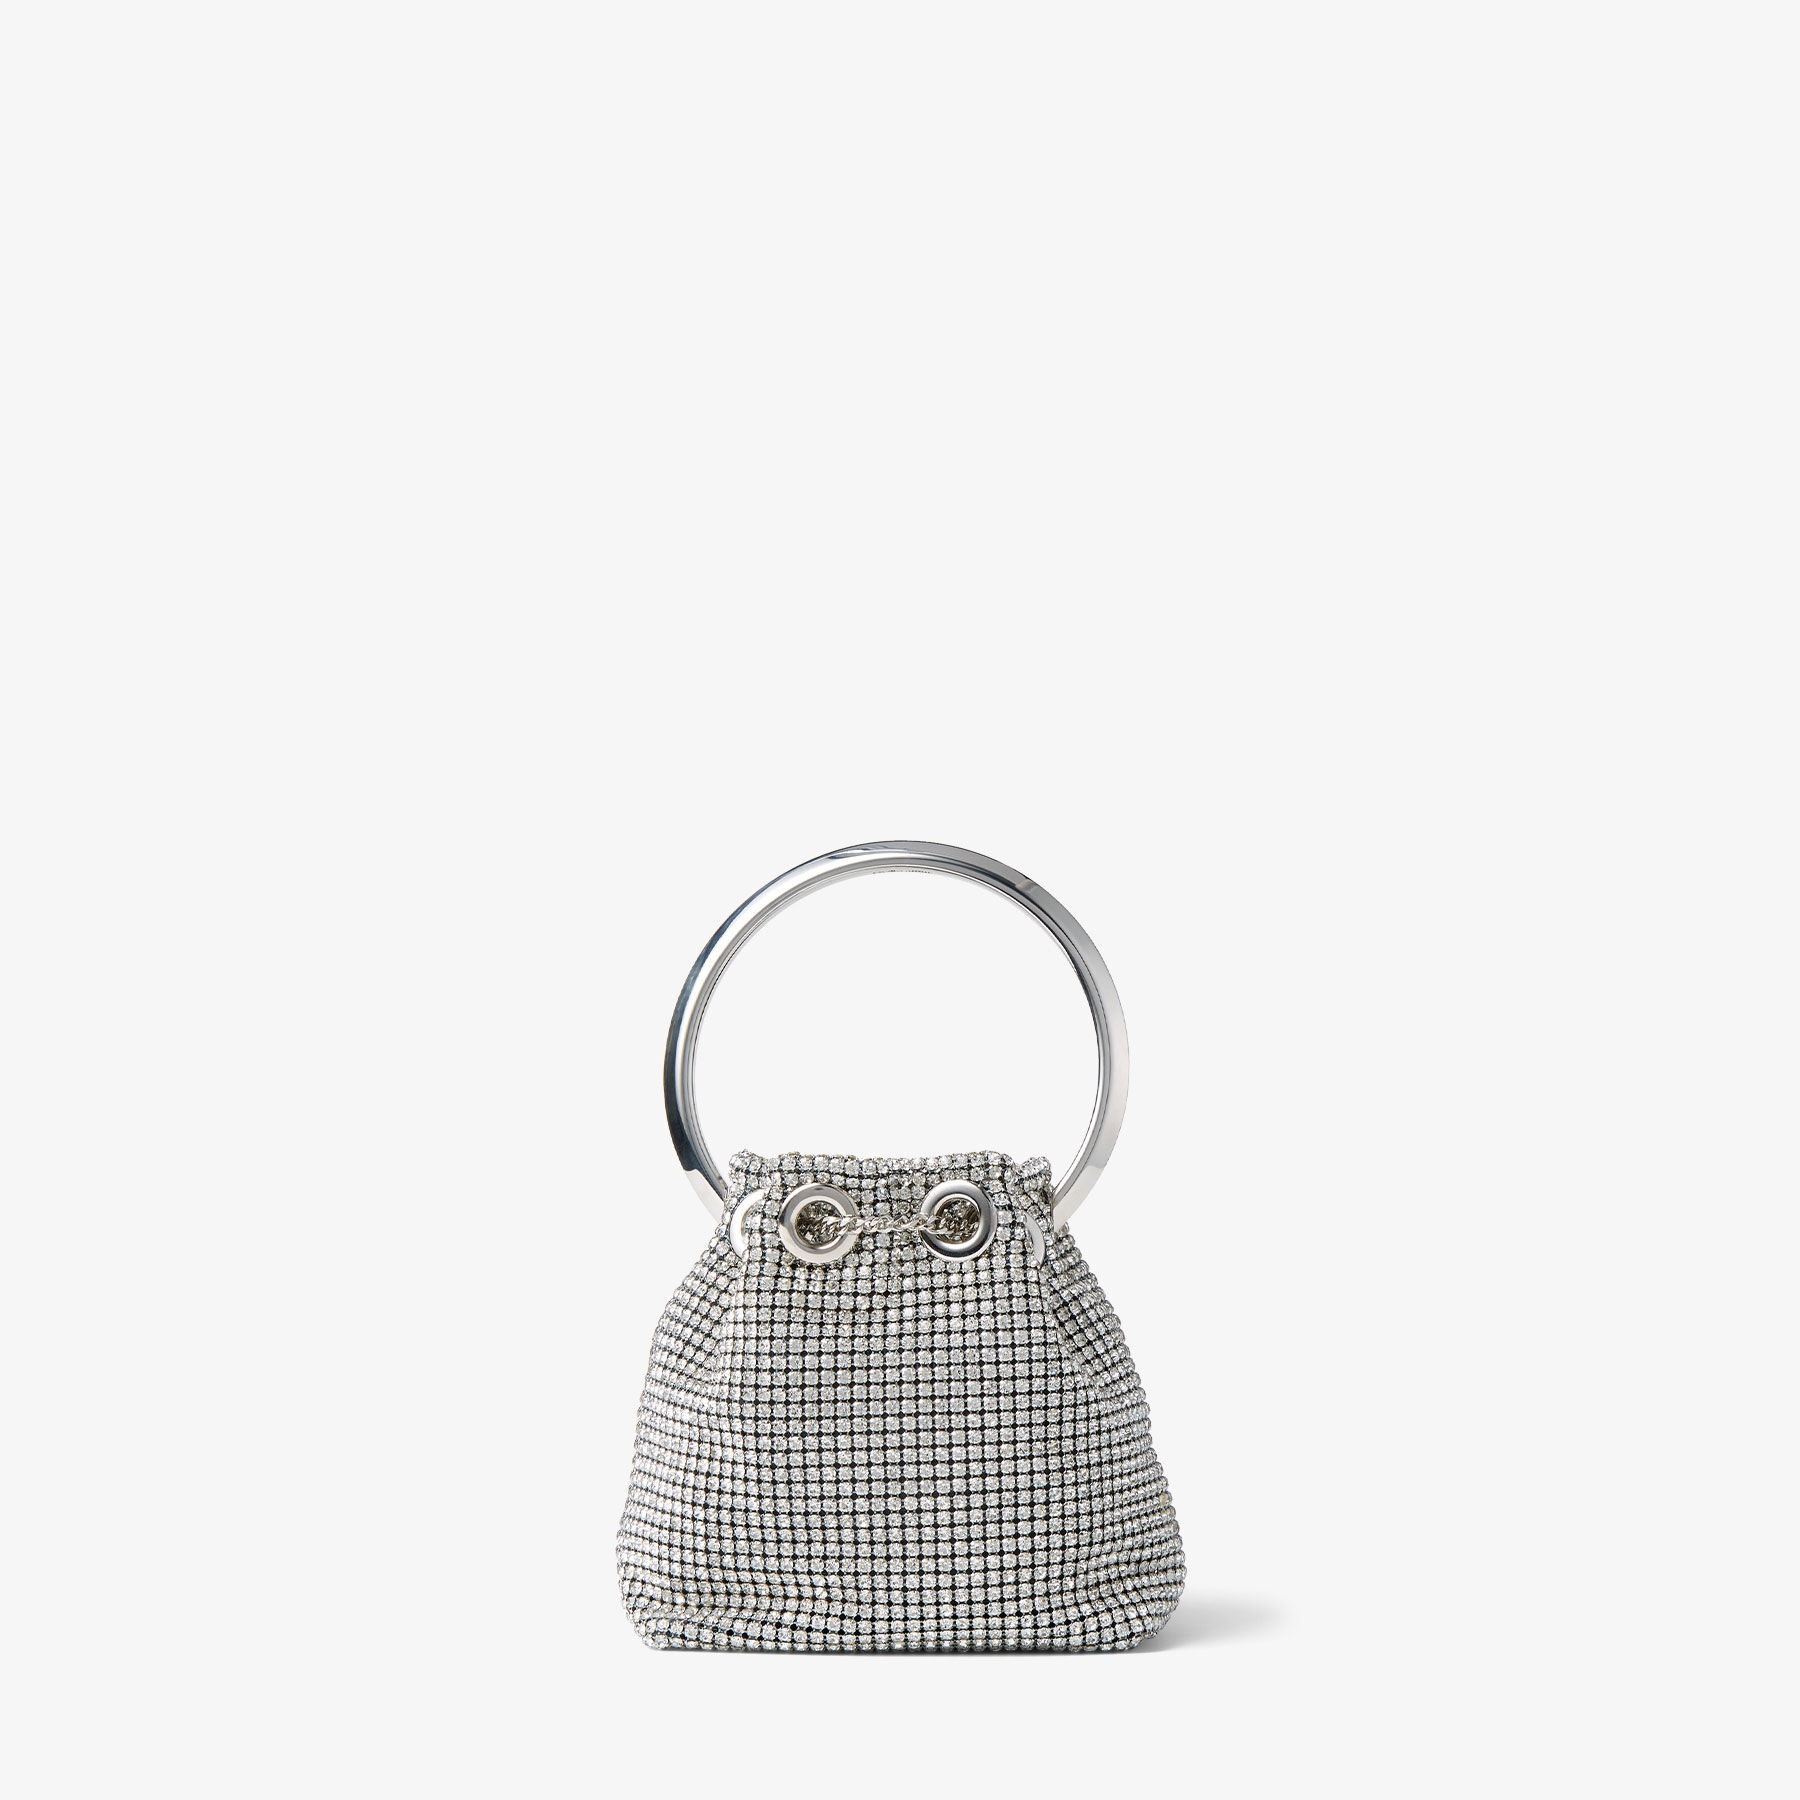 Micro Bon Bon
Silver Crystal Mesh Bag with Crystal Handle - 7